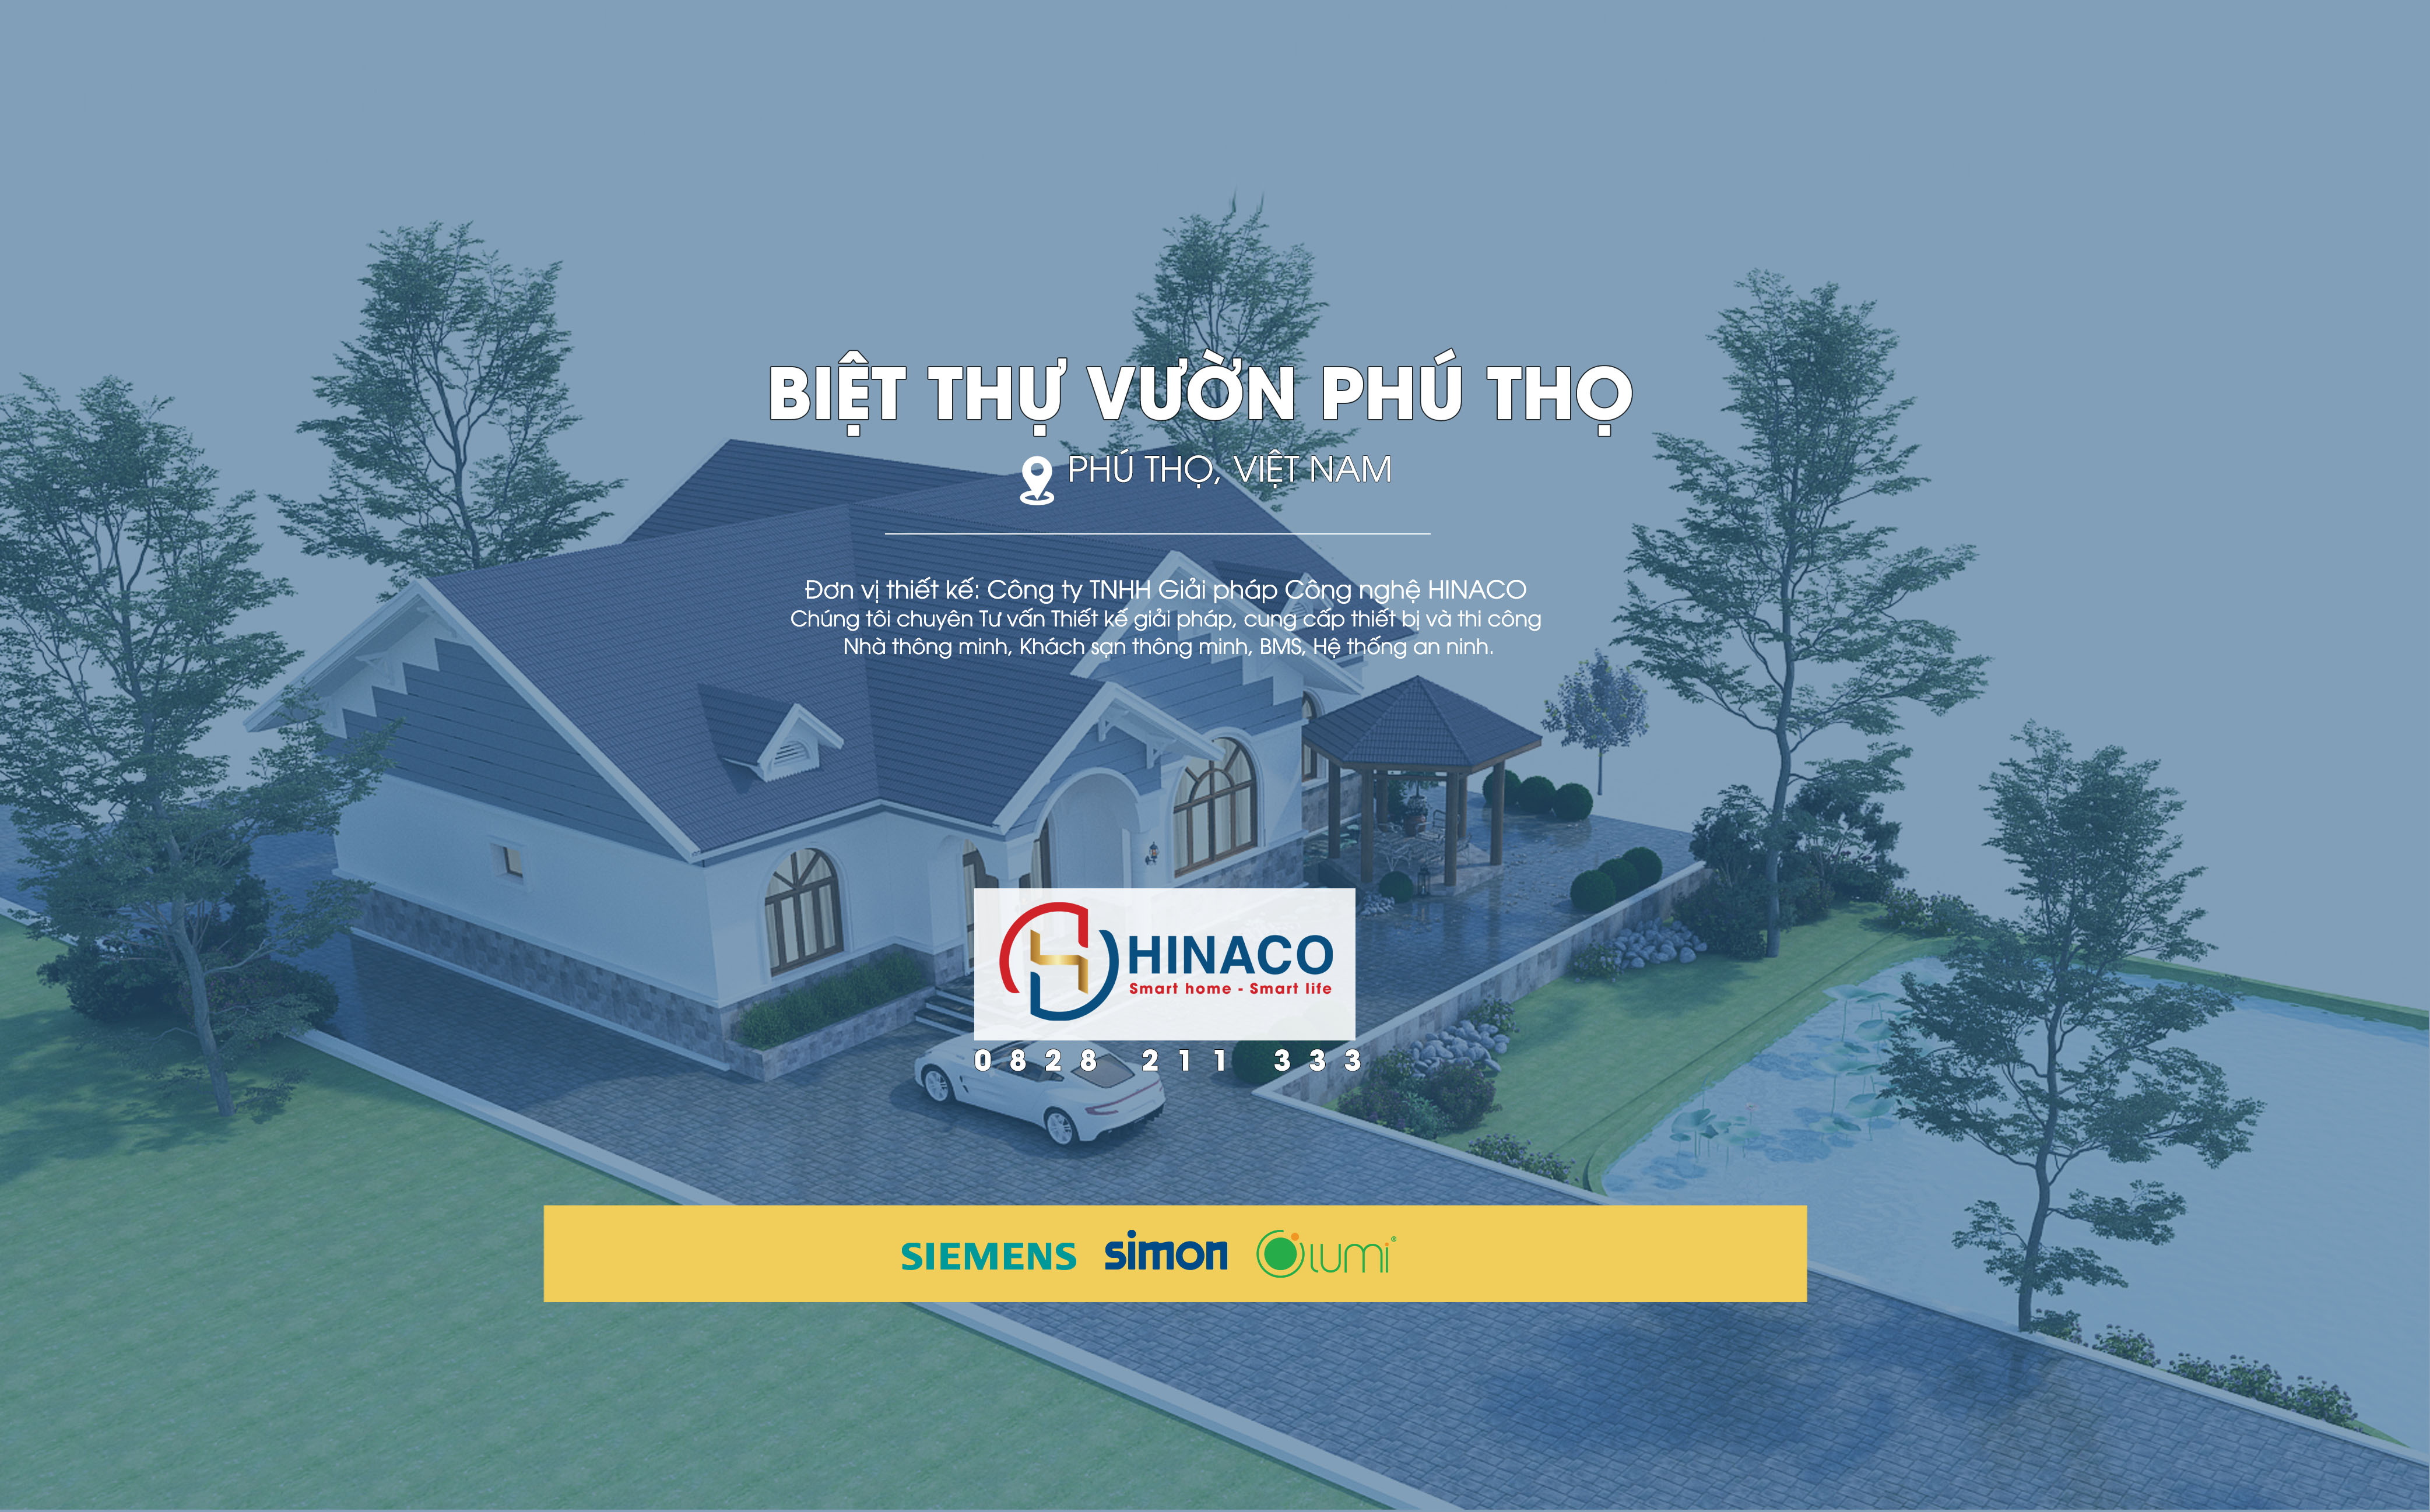 HINACO ký hợp đồng Thiết kế thi công nhà thông minh Biệt thự Phú Thọ